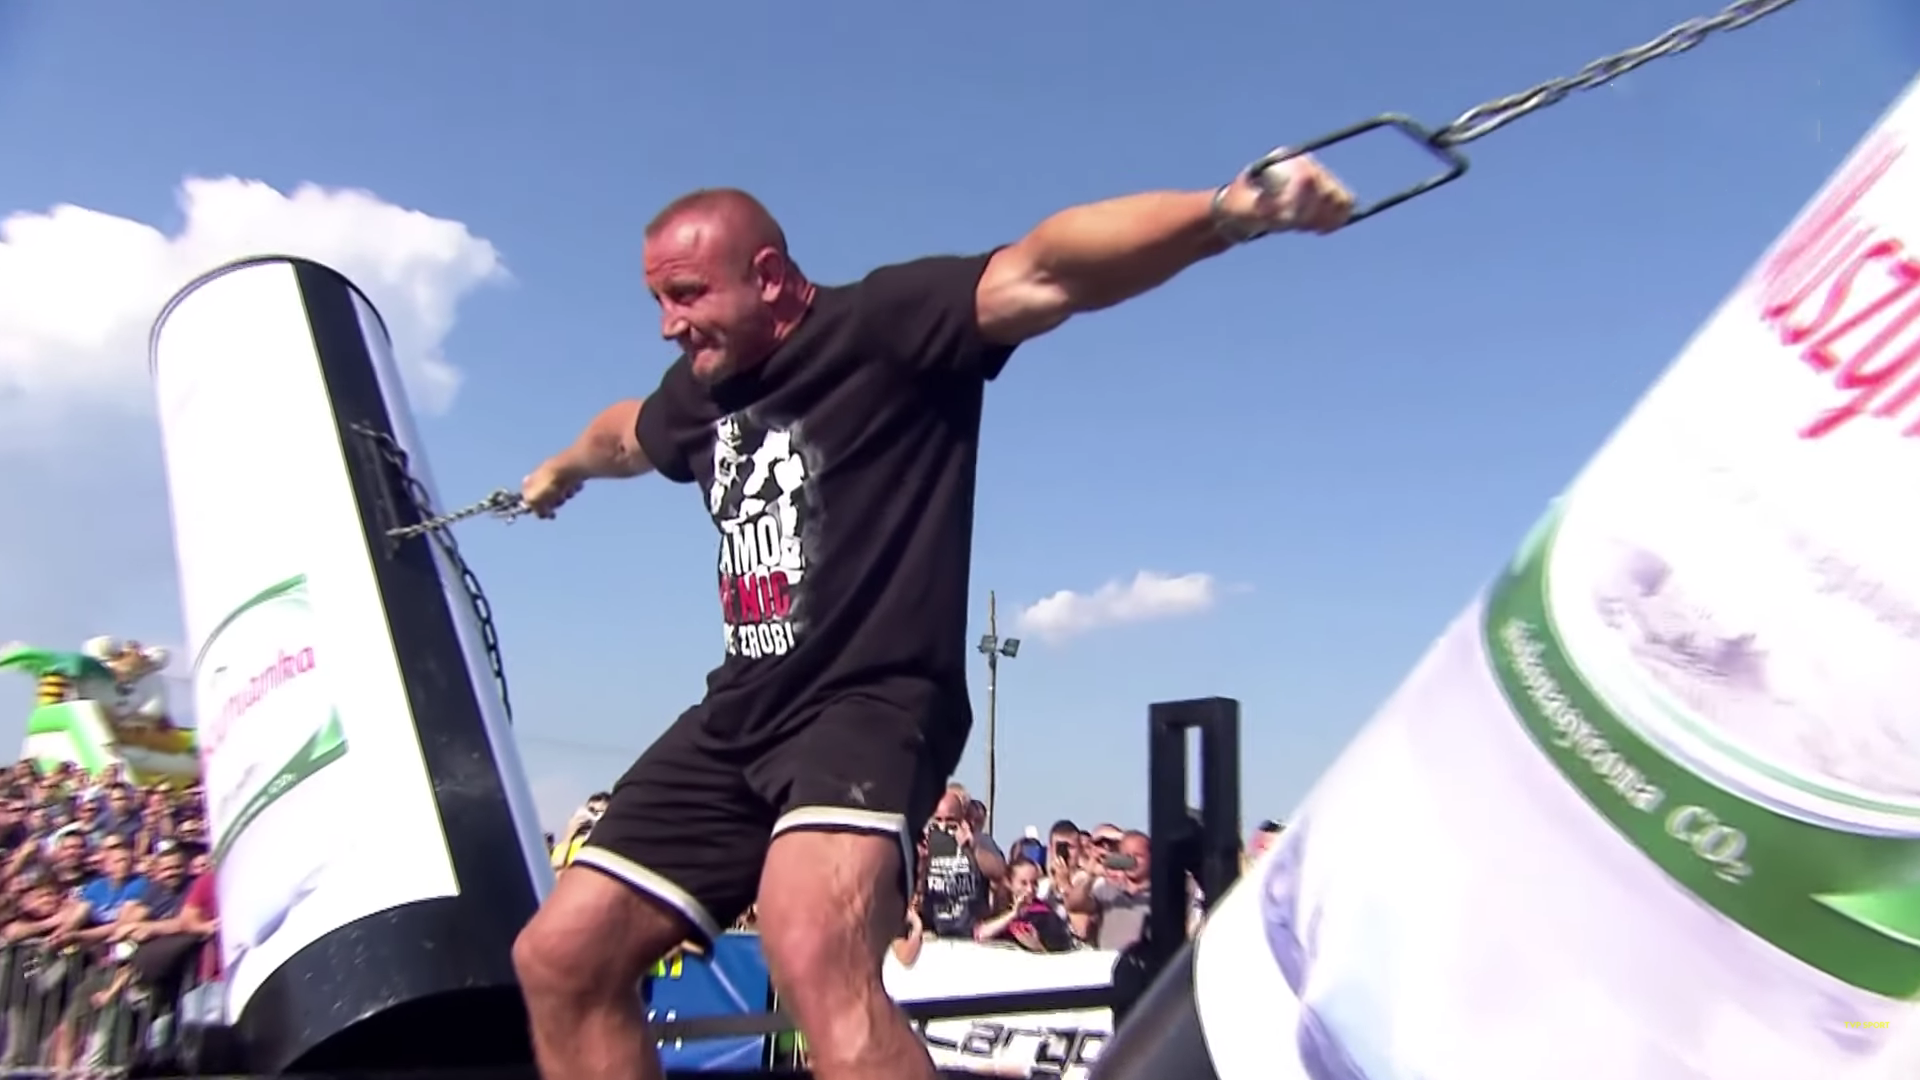 (VIDEO) Pudzianowski nadal w świetnej formie! Pokonał strongmanów startujących w mistrzostwach Polski!